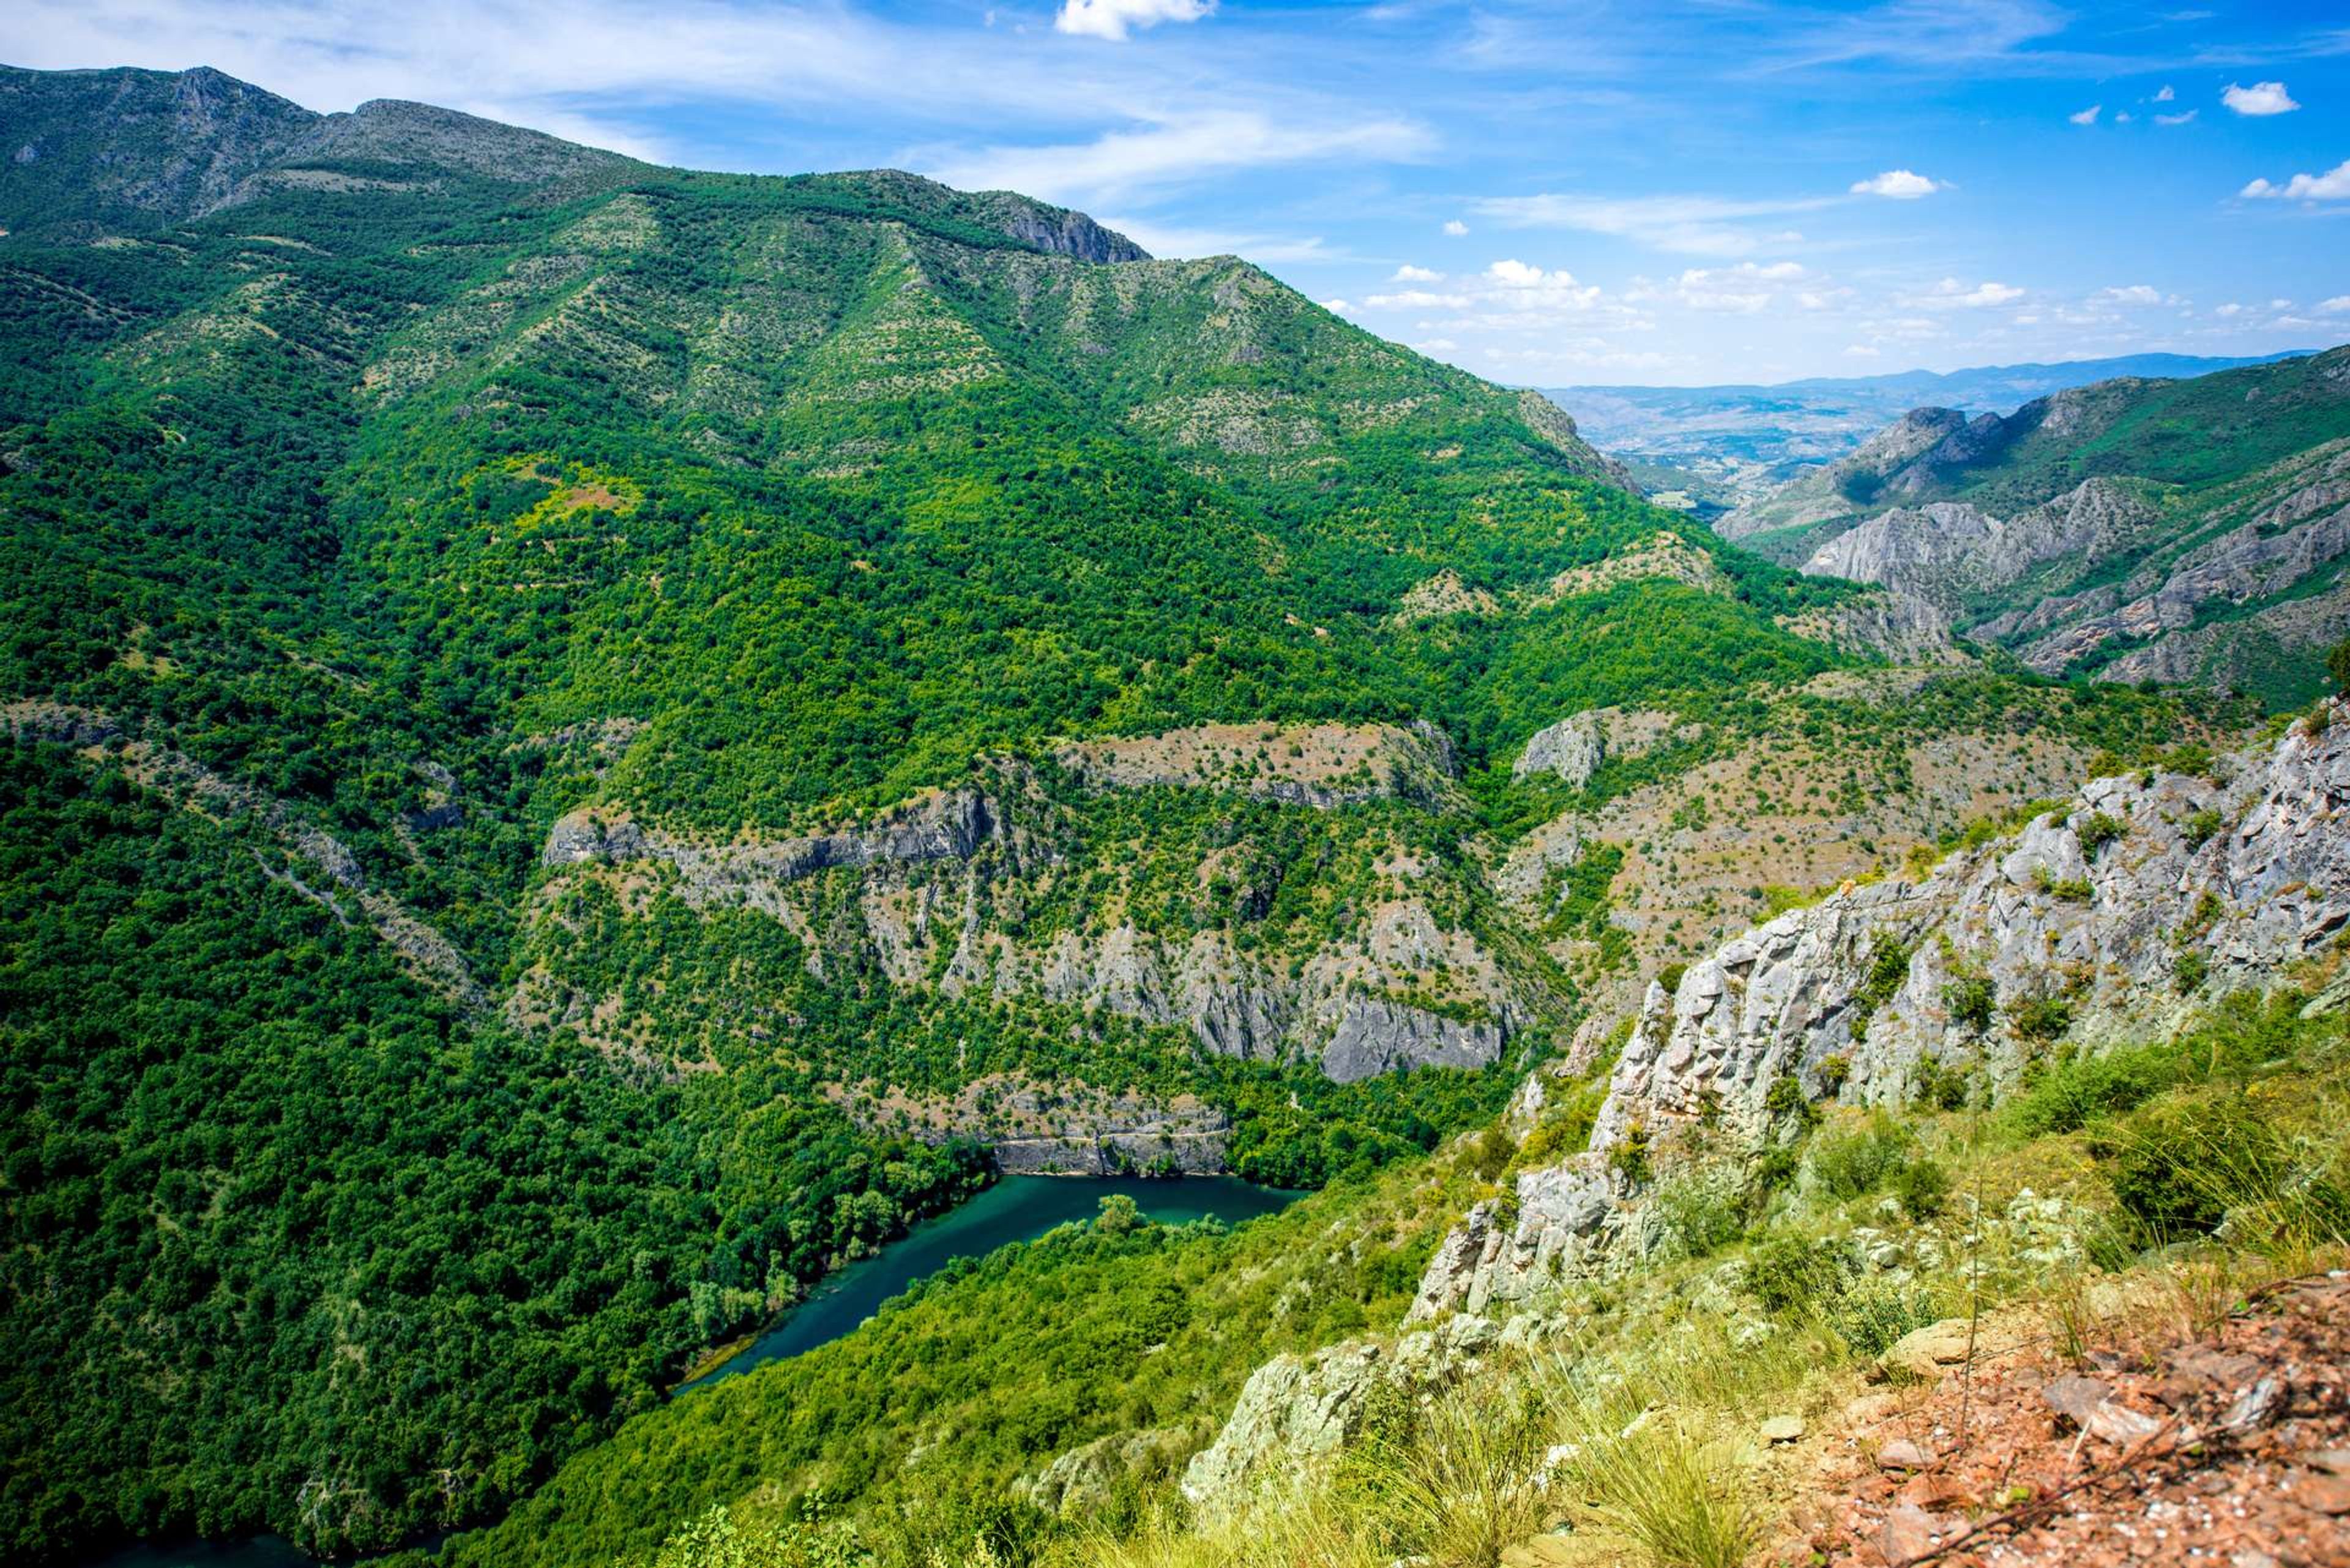 Macedonië Matka canyon near Skopje